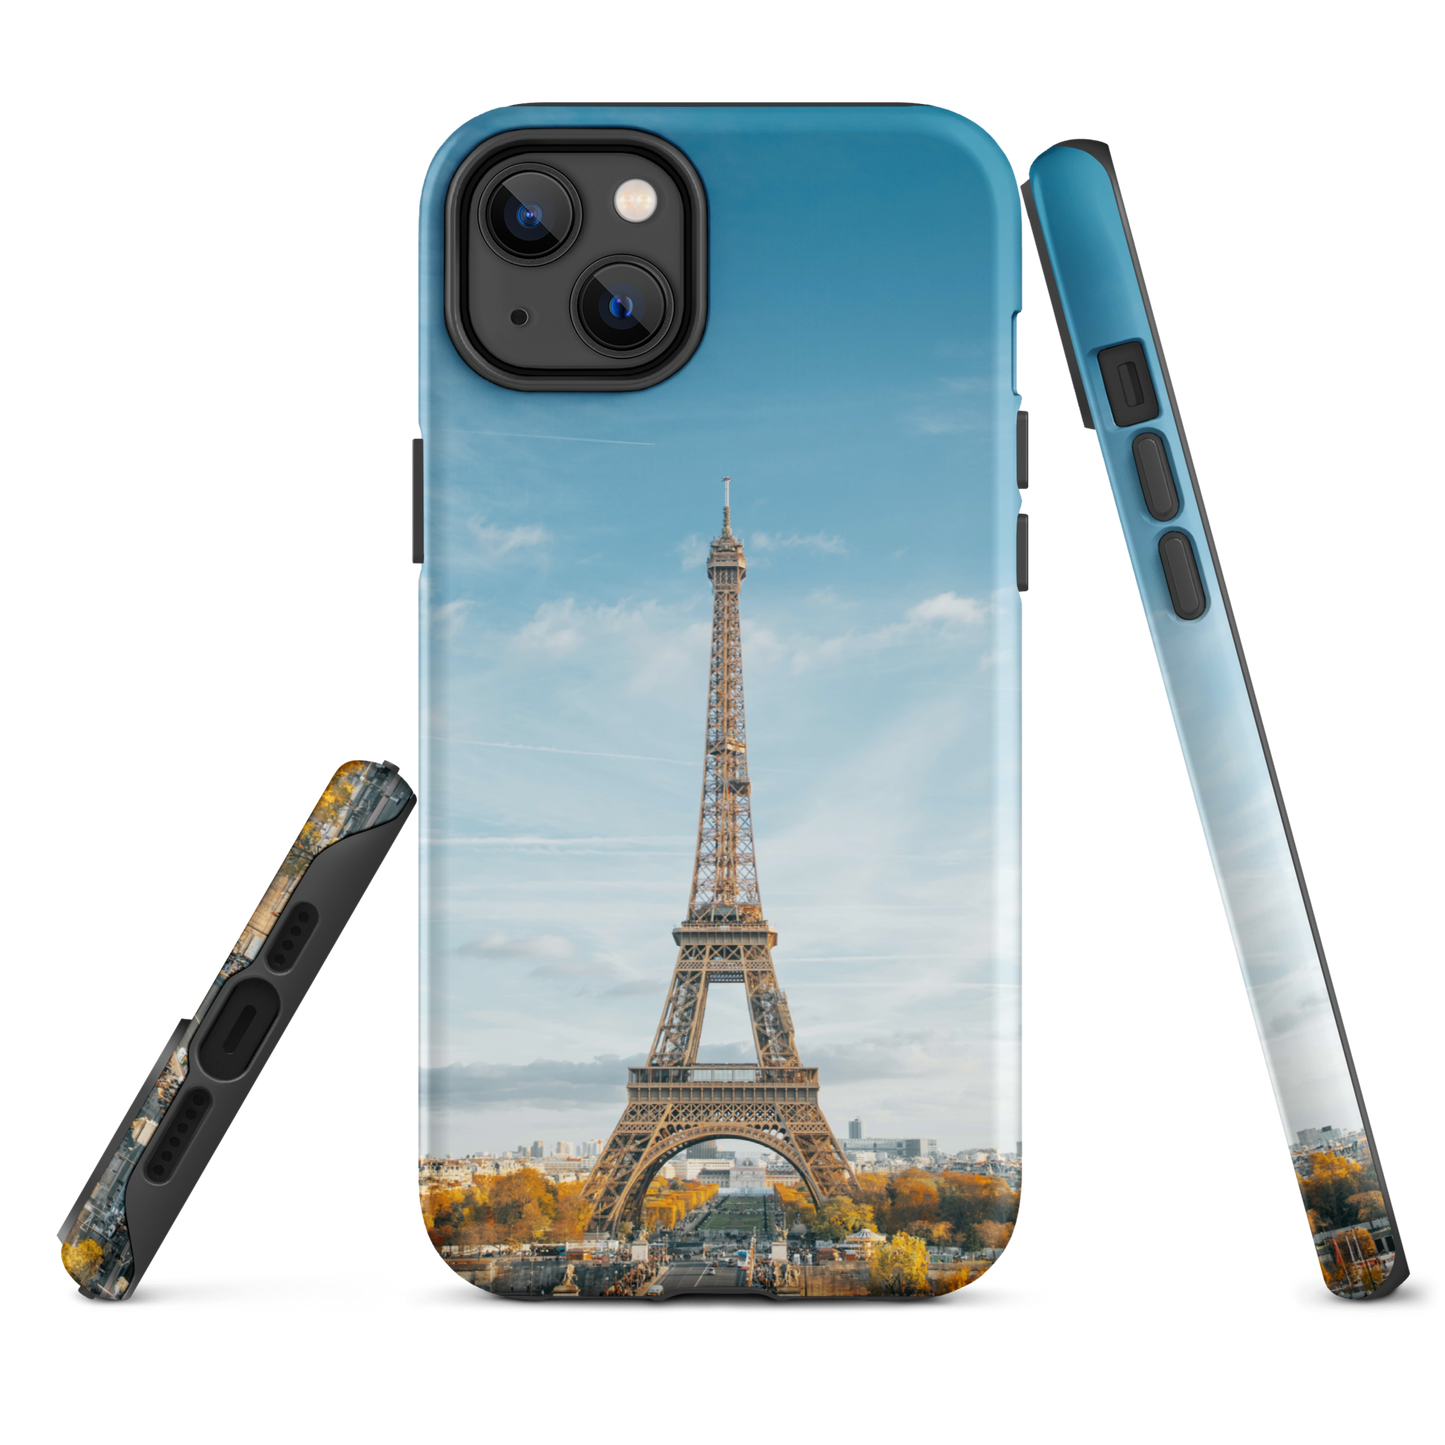 Coque rigide inspirée de la Tour Eiffel Paris : une protection élégante pour votre iPhone®